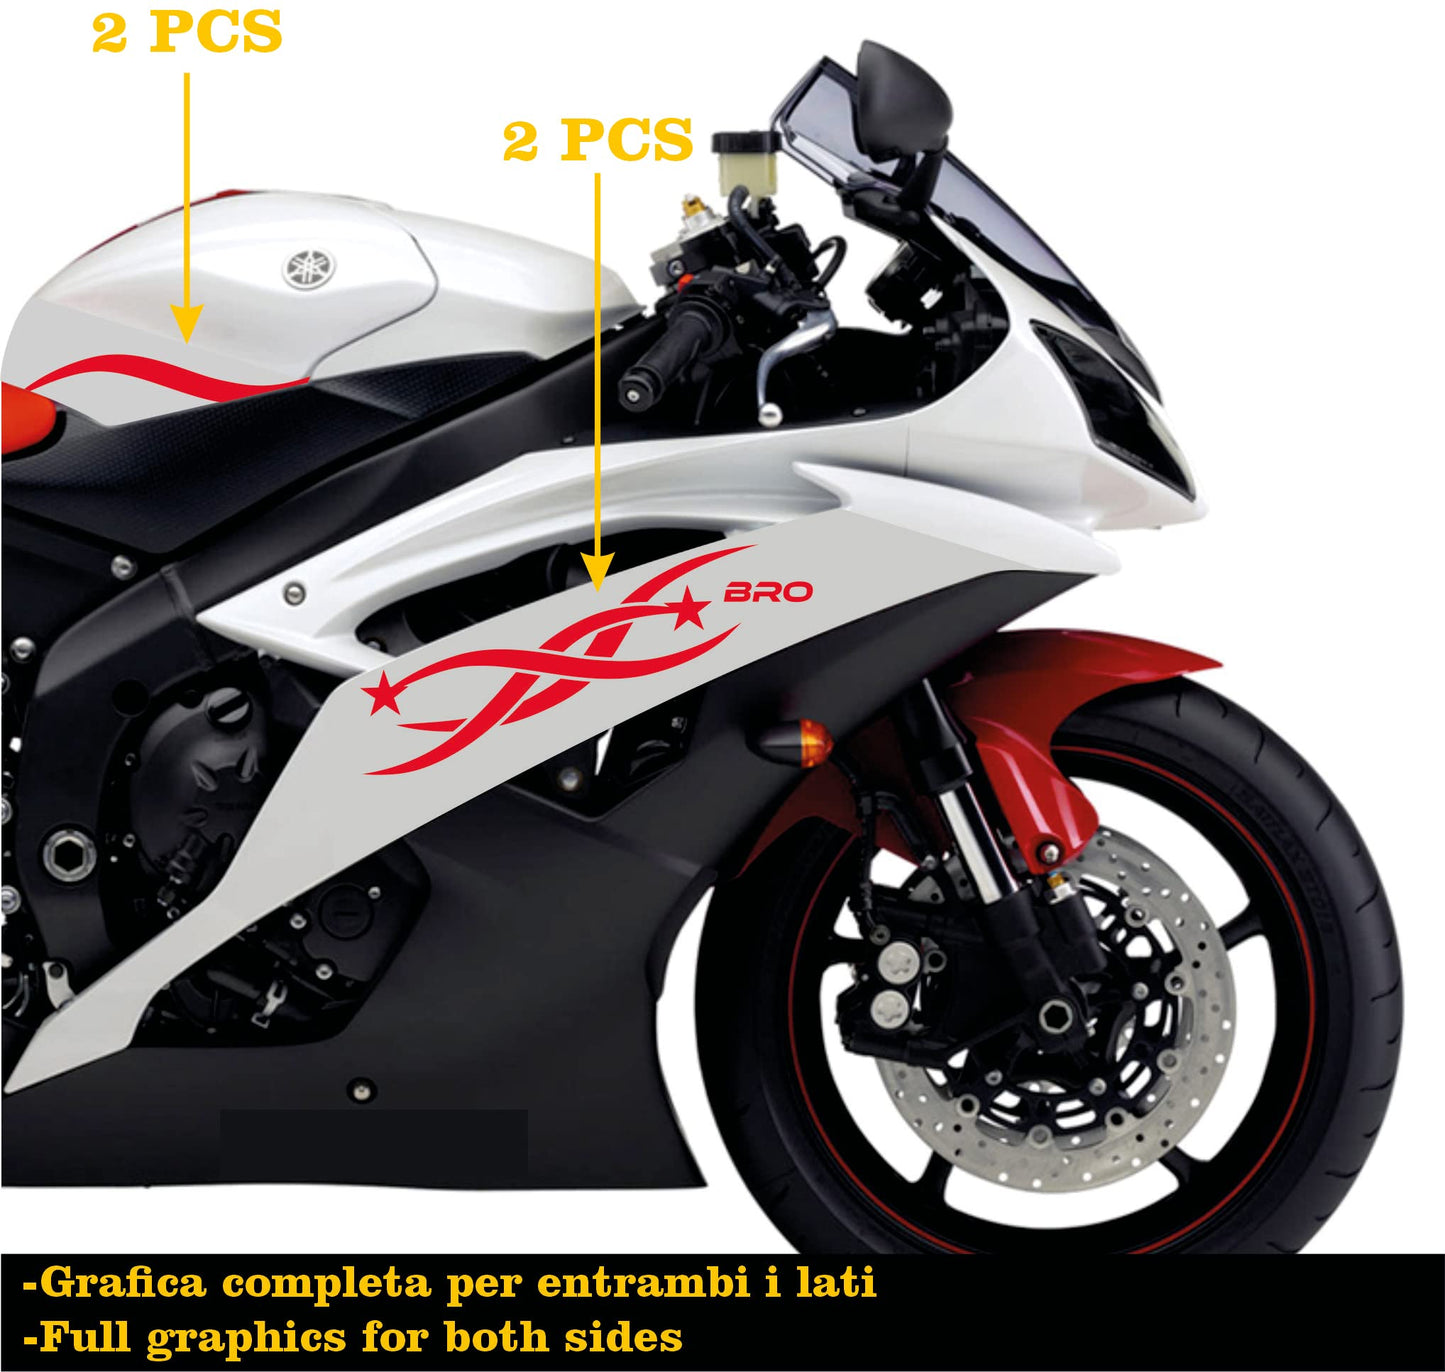 DualColorStampe Adesivi Compatibili con Yamaha R6 ANNO 2008 carena moto accessori stickers Motociclo colore a scelta BRO COD.M0280 a €34.99 solo da DualColorStampe